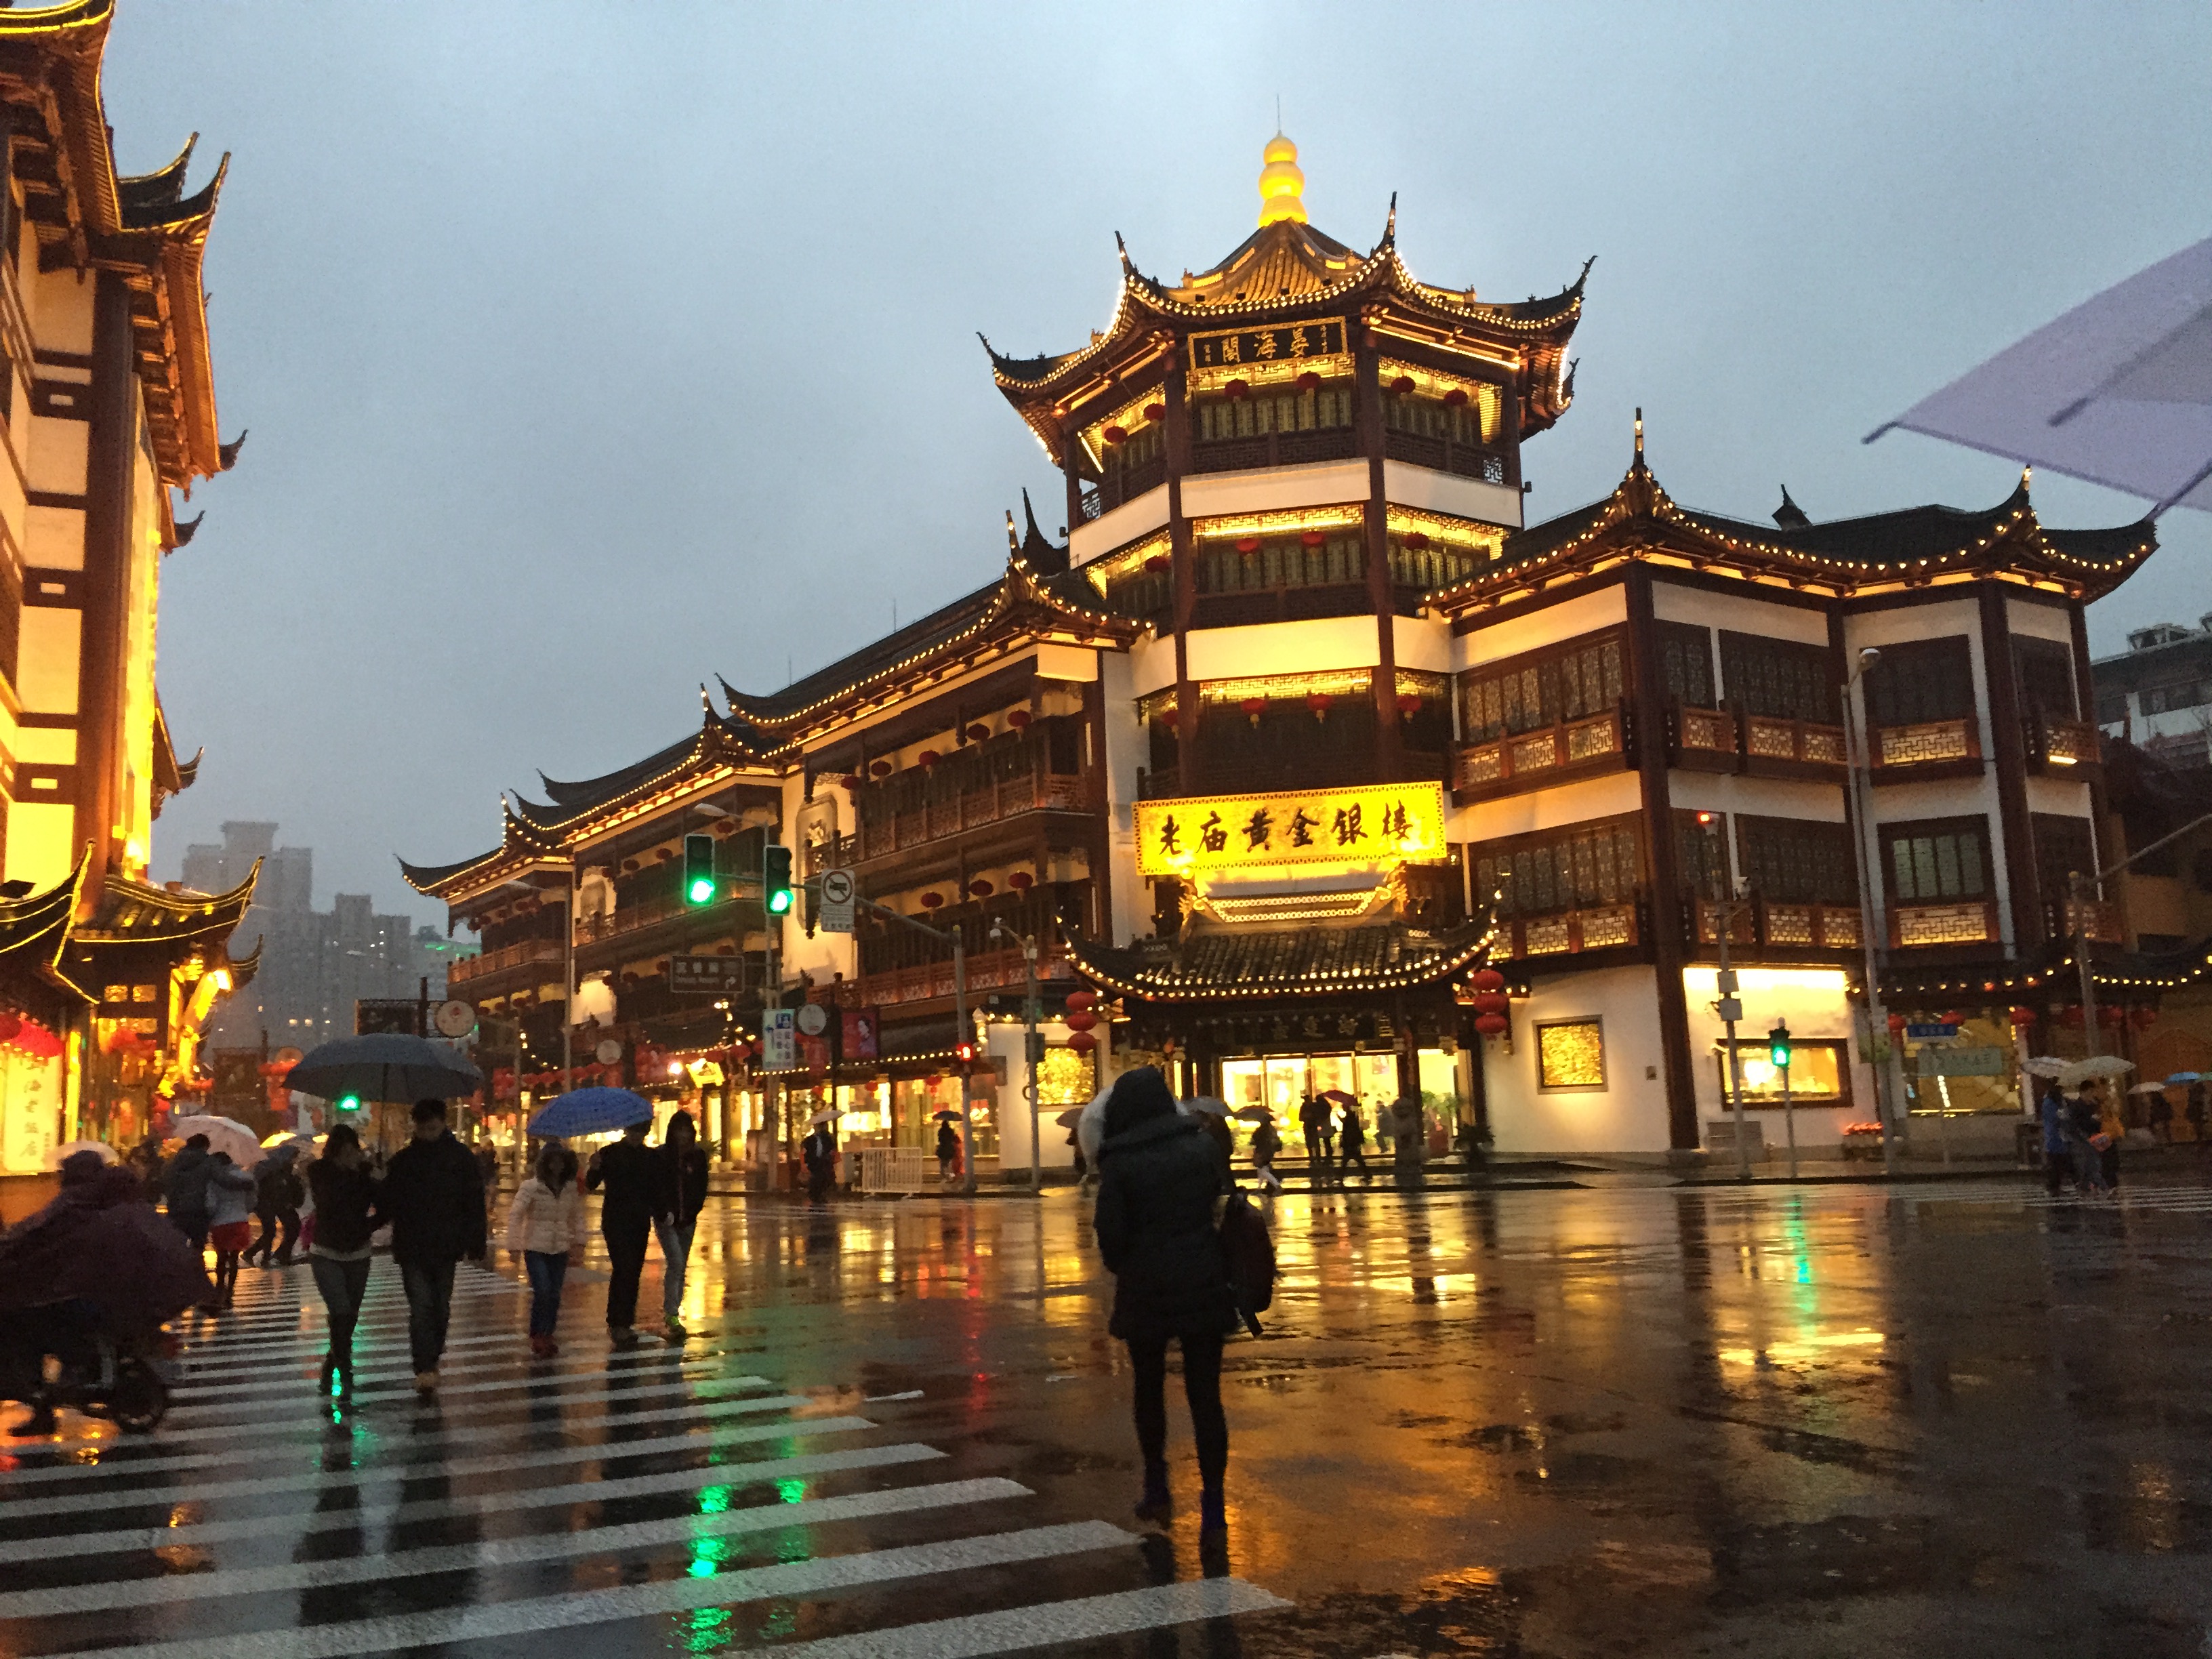 Nếu bạn yêu thích du lịch, hãy dành chút thời gian để chiêm ngưỡng những bức ảnh du lịch đẹp mê hồn của Trung Quốc. Từ thành phố sầm uất Bắc Kinh tới Vịnh Hạ Long Trung Quốc, bạn sẽ không bao giờ hối hận khi lựa chọn Trung Quốc là điểm đến của mình.